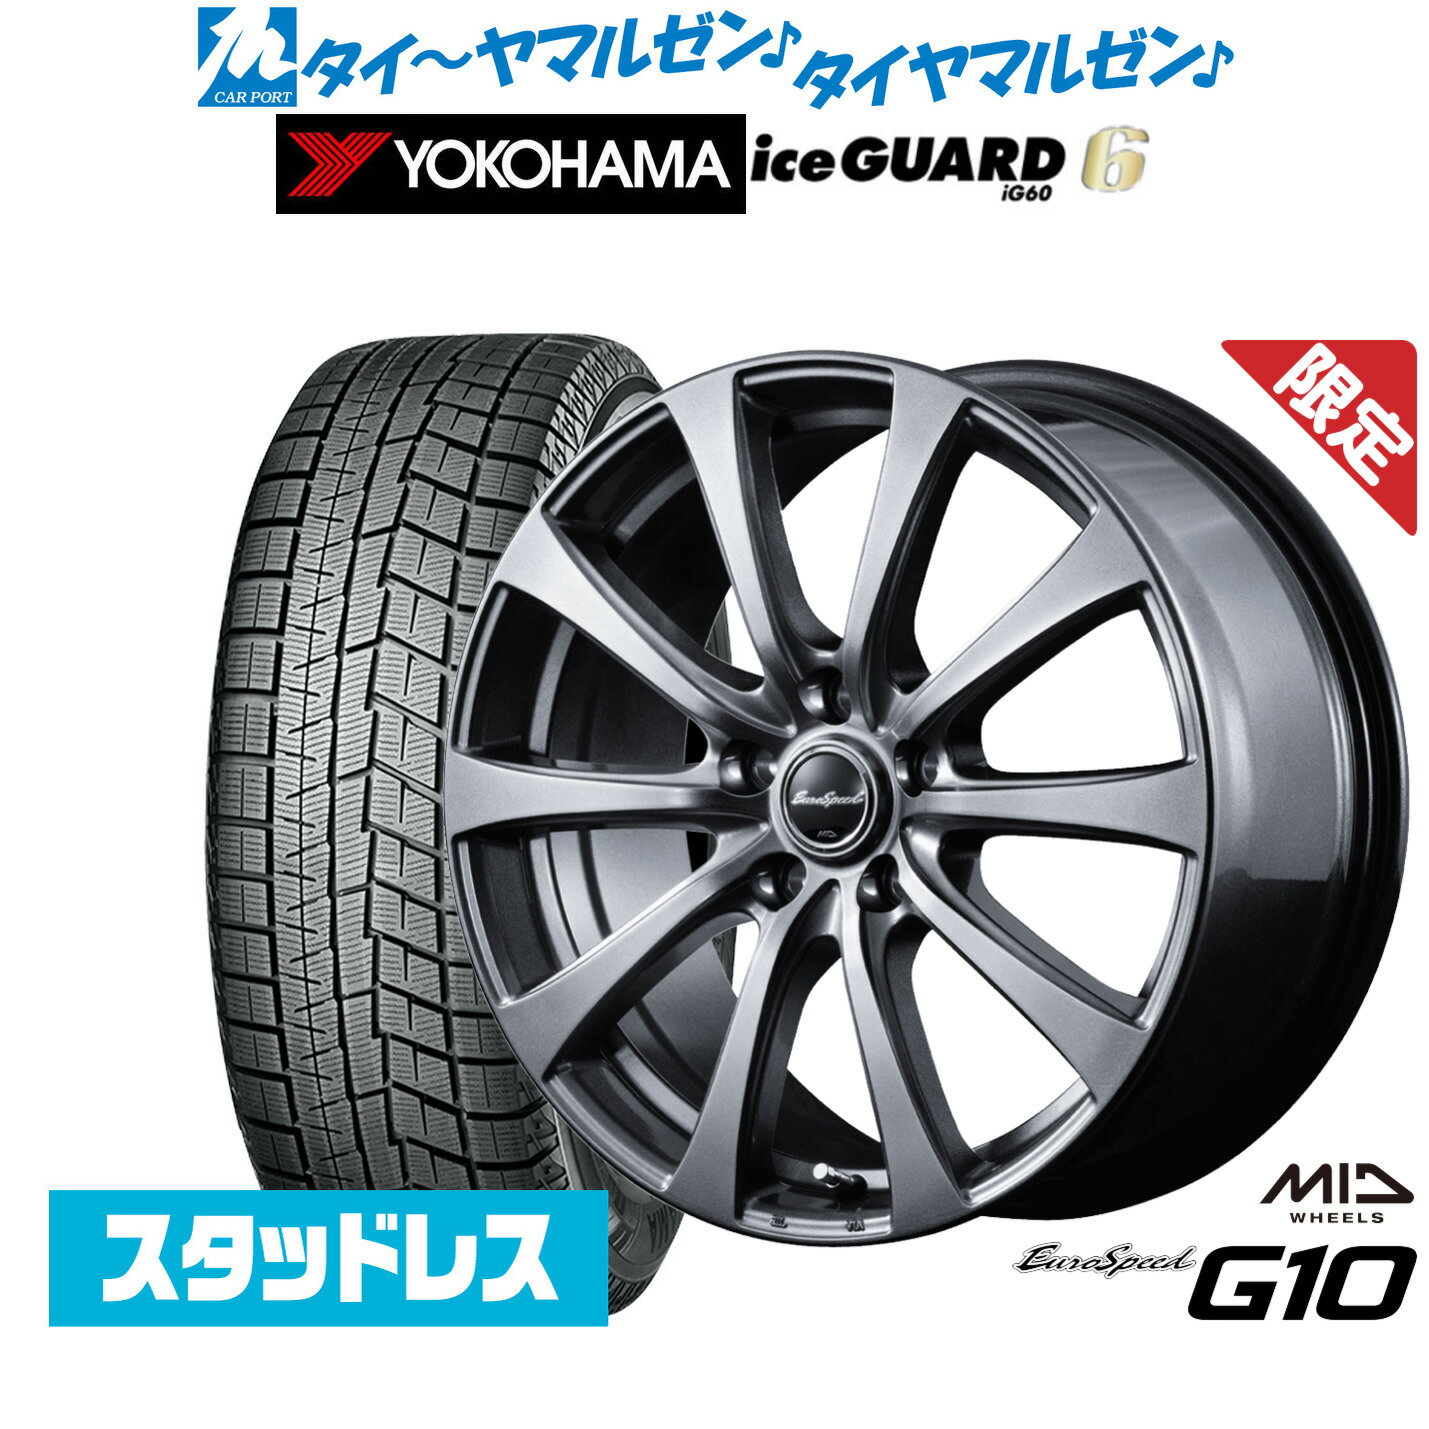 【数量限定】新品 スタッドレスタイヤ ホイール4本セットMID ユーロスピード G-1016インチ 6.5Jヨコハマ アイスガード IG60215/60R16